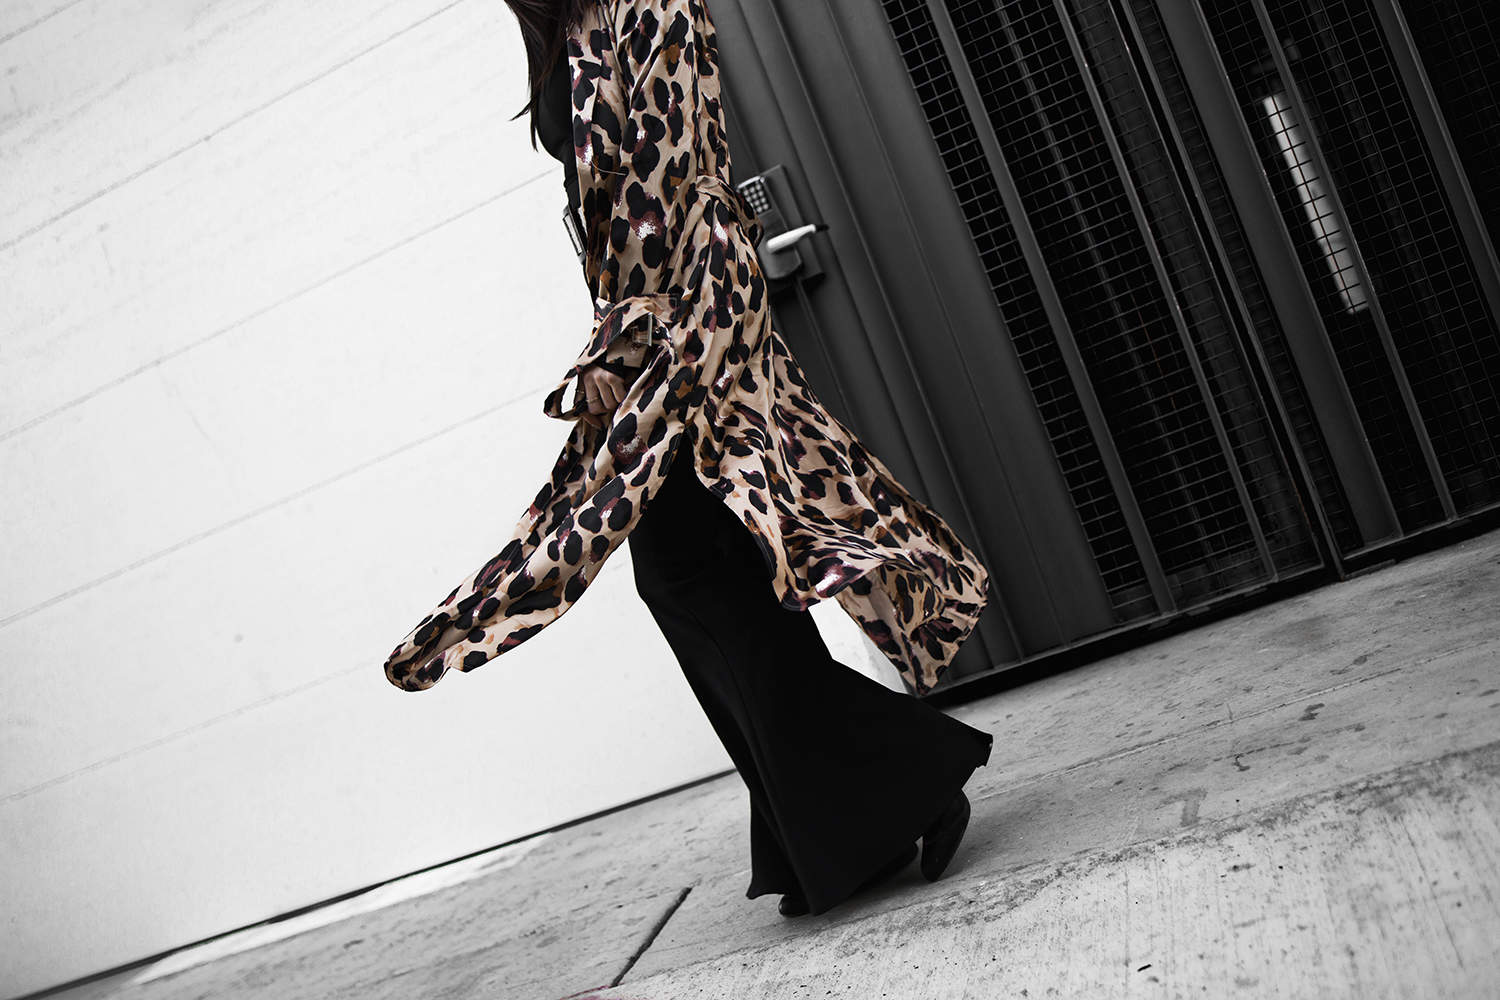 feline feels, fashionlush, leopard street style